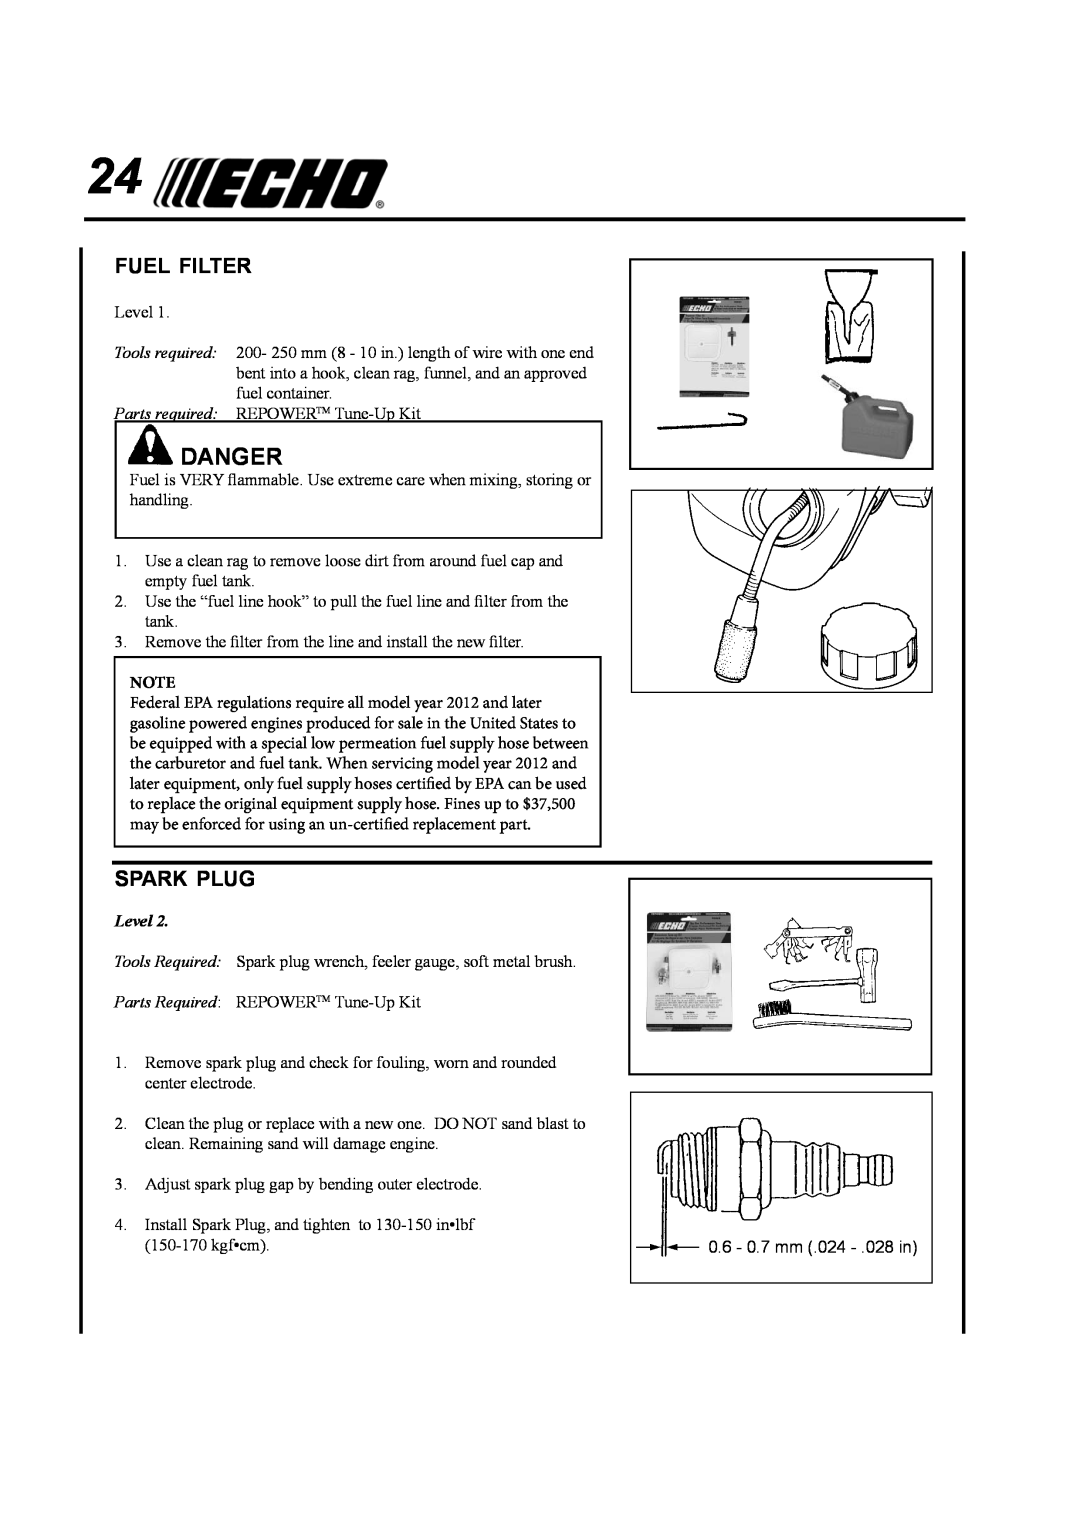 Echo SRM-410U manual Fuel Filter, Spark Plug, Danger, Level 